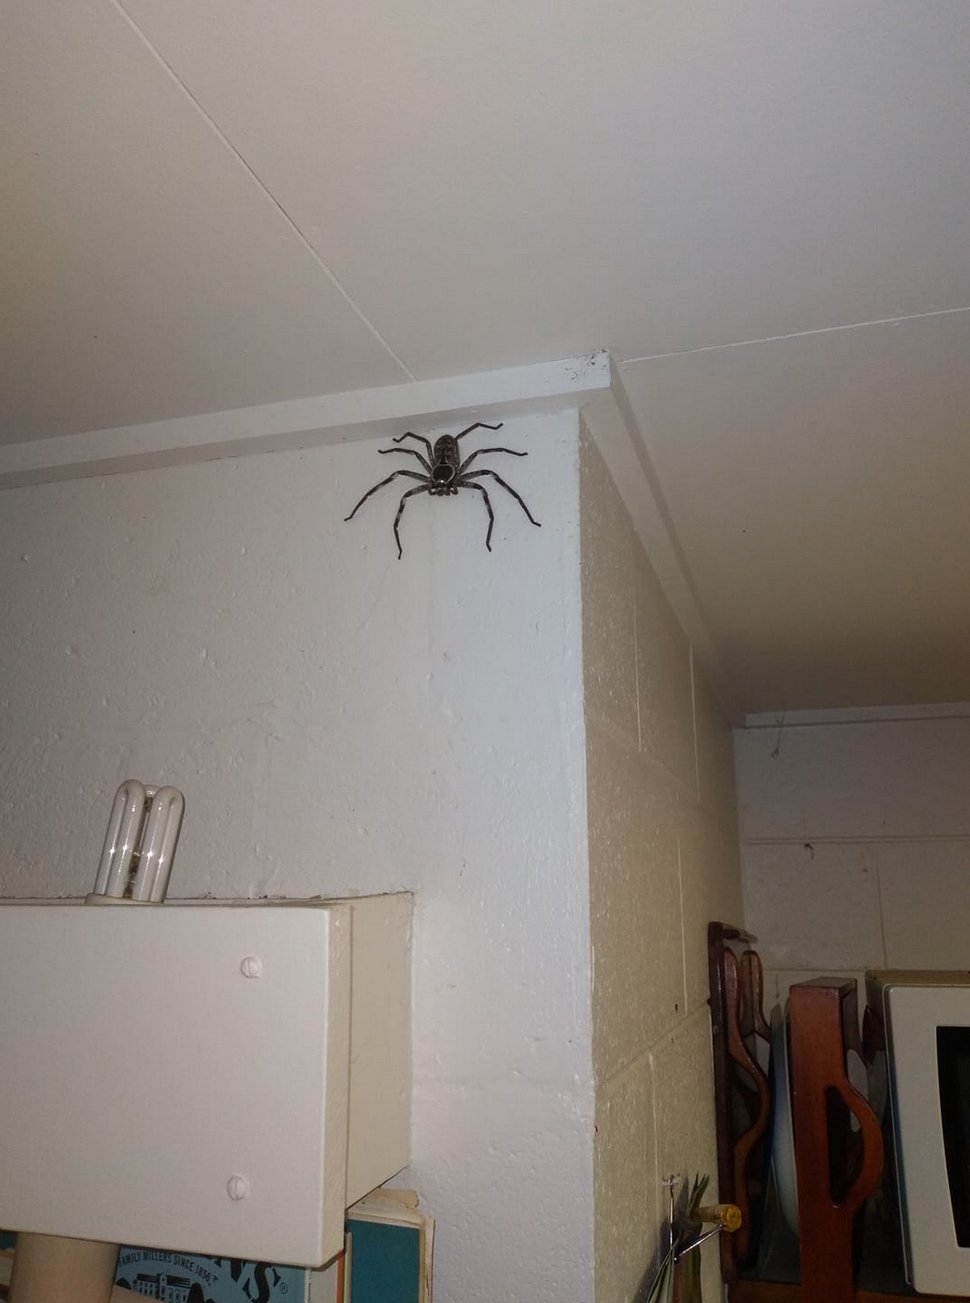 Un homme laisse une araignée géante vivre dans sa maison pendant un an